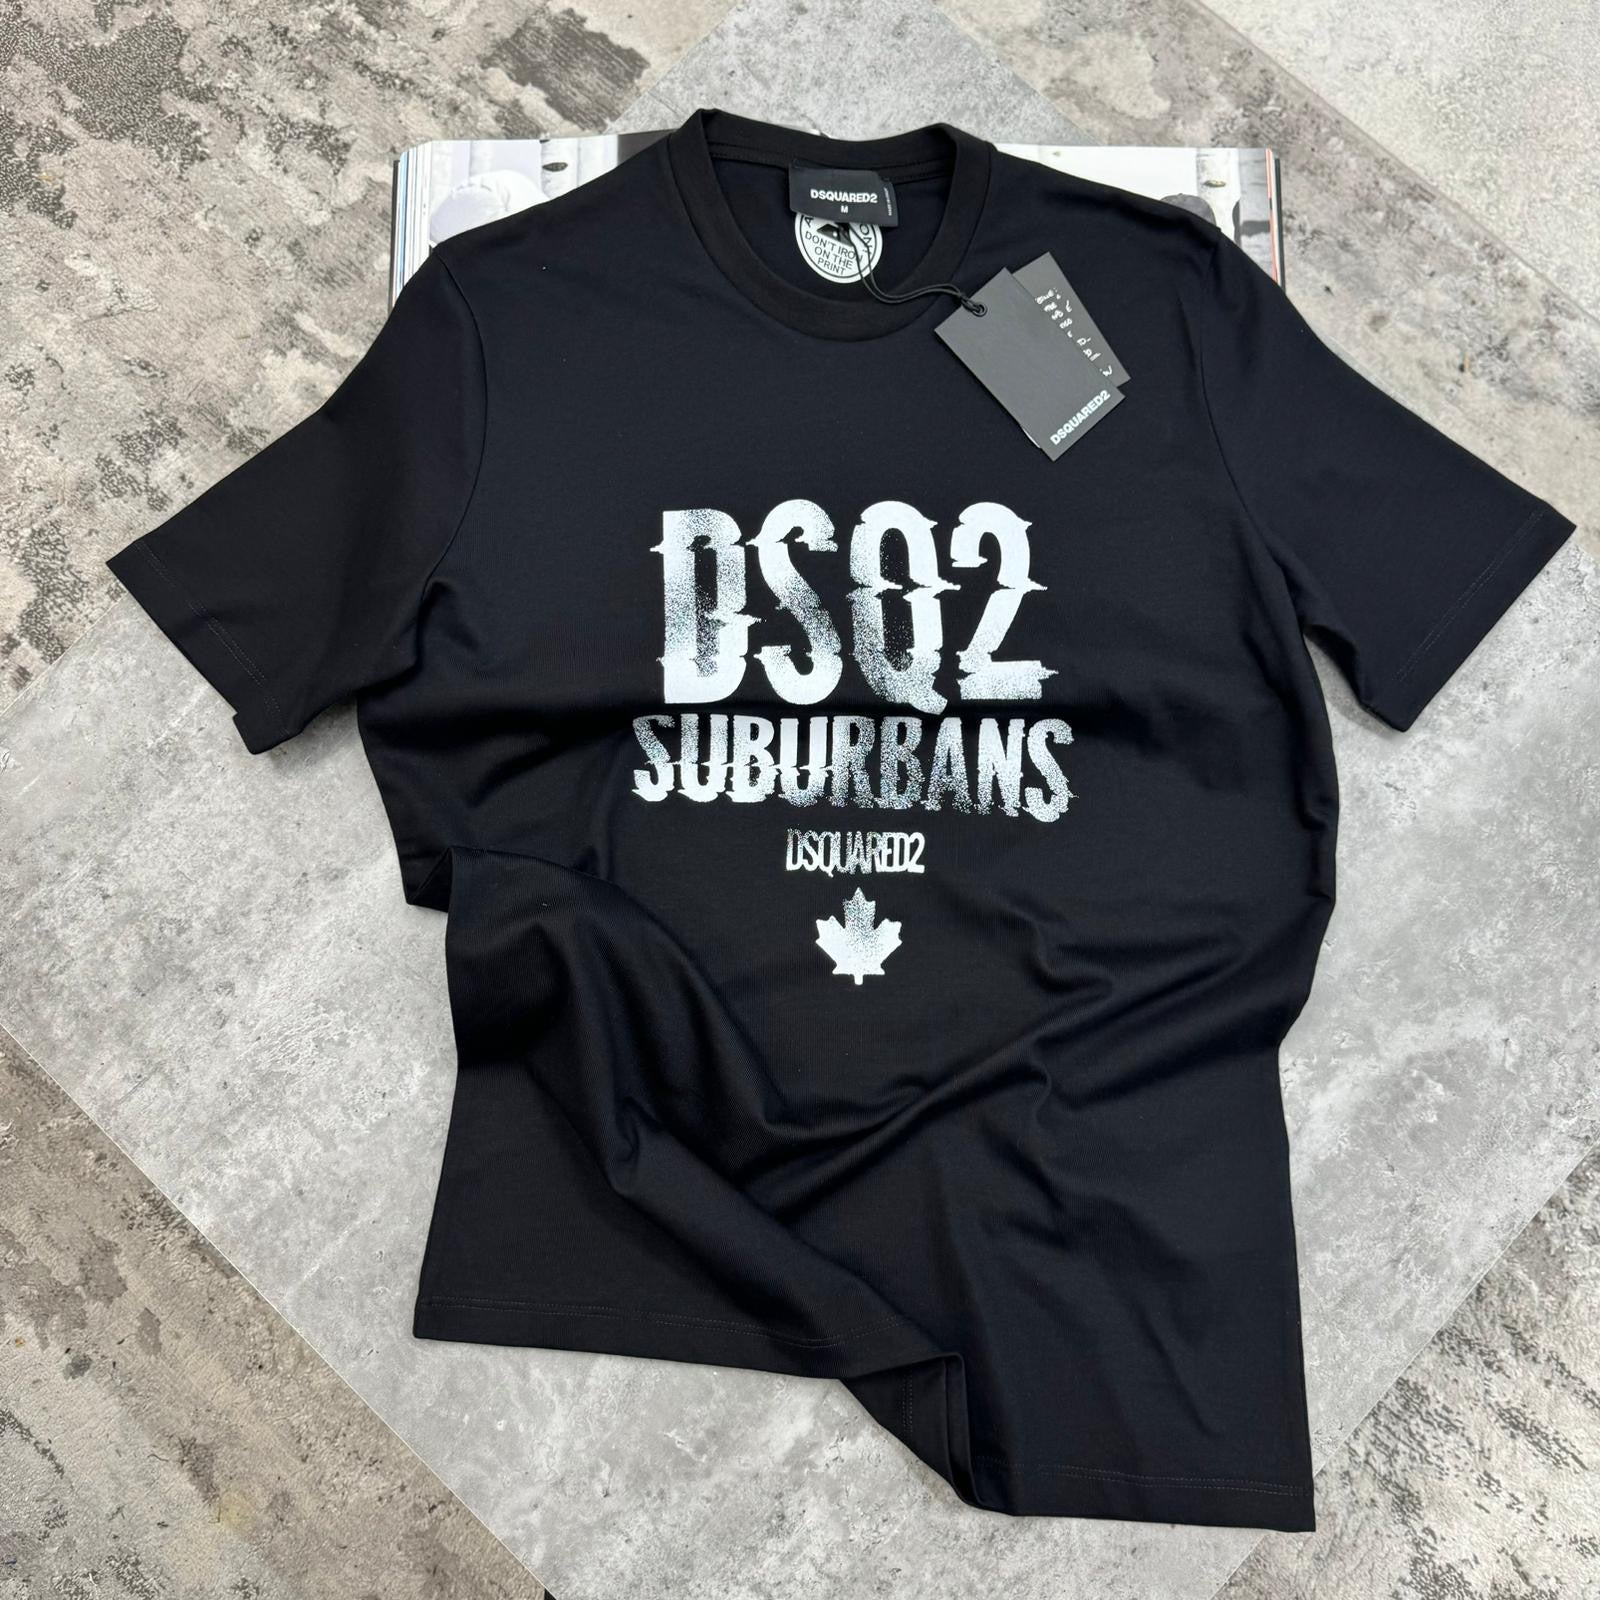 DSQUARED2 - SUBURBAN T-SHIRT - BLACK